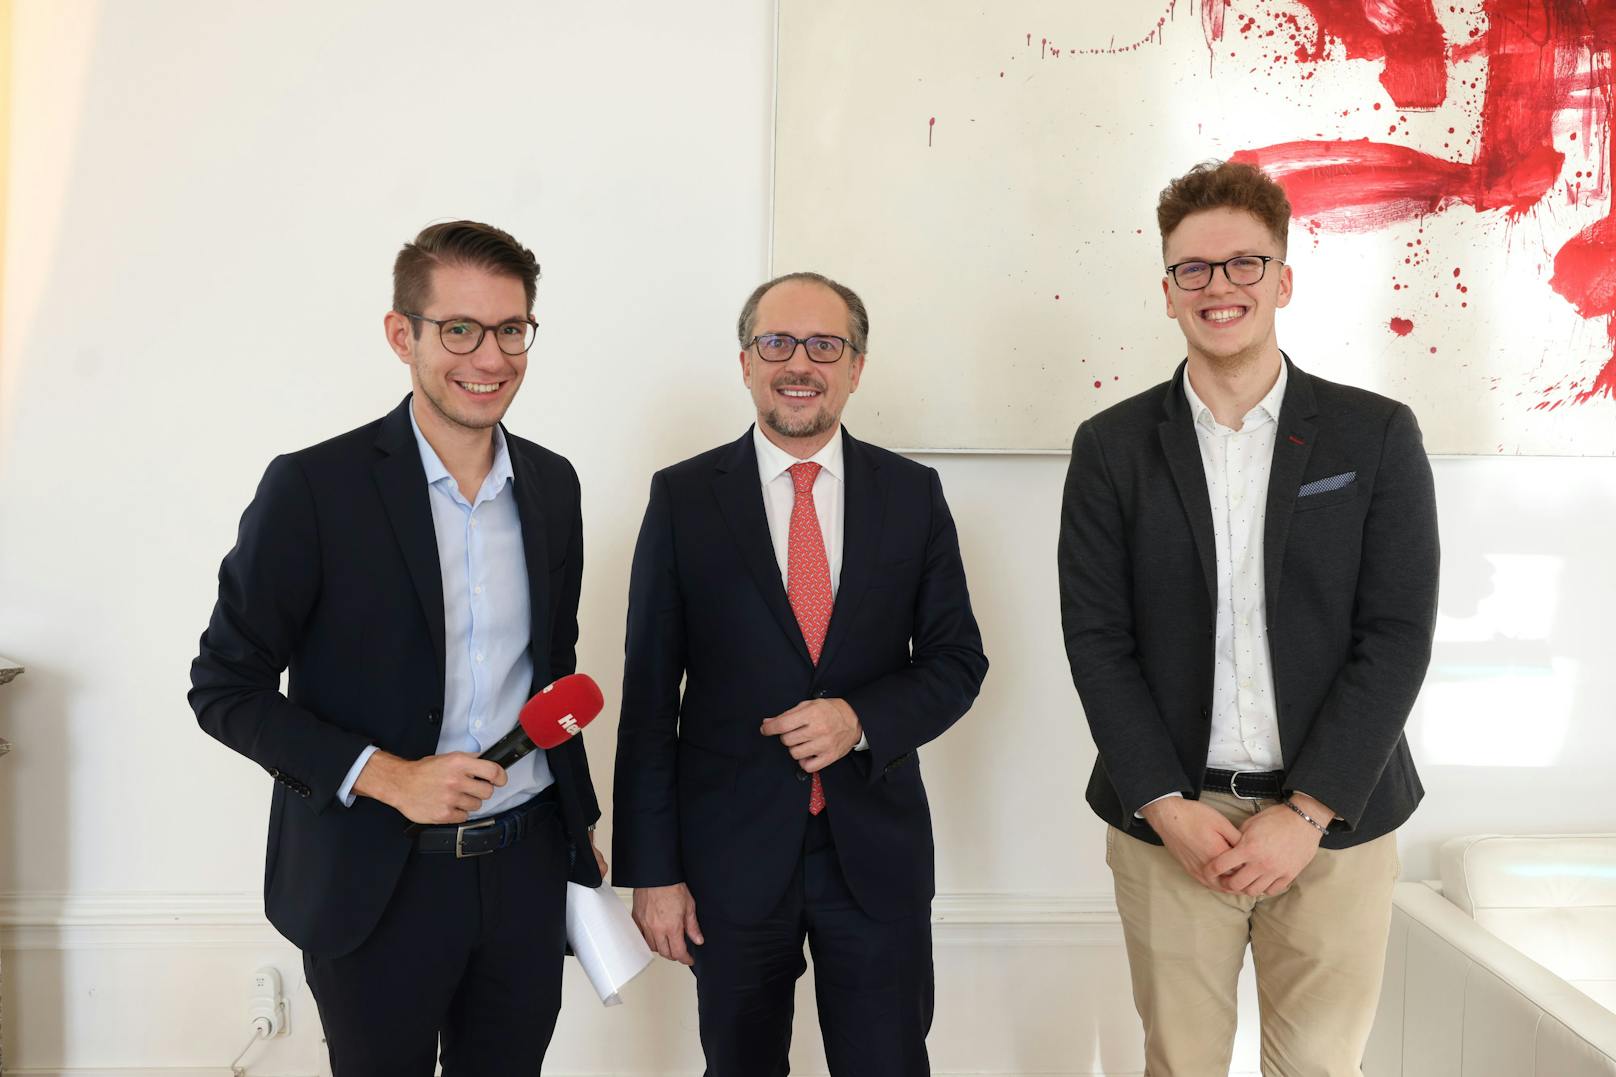 Alexander Schallenberg gemeinsam mit "Heute"-Chefredakteur Clemens Oistric und Redakteur Nicolas Kubrak.